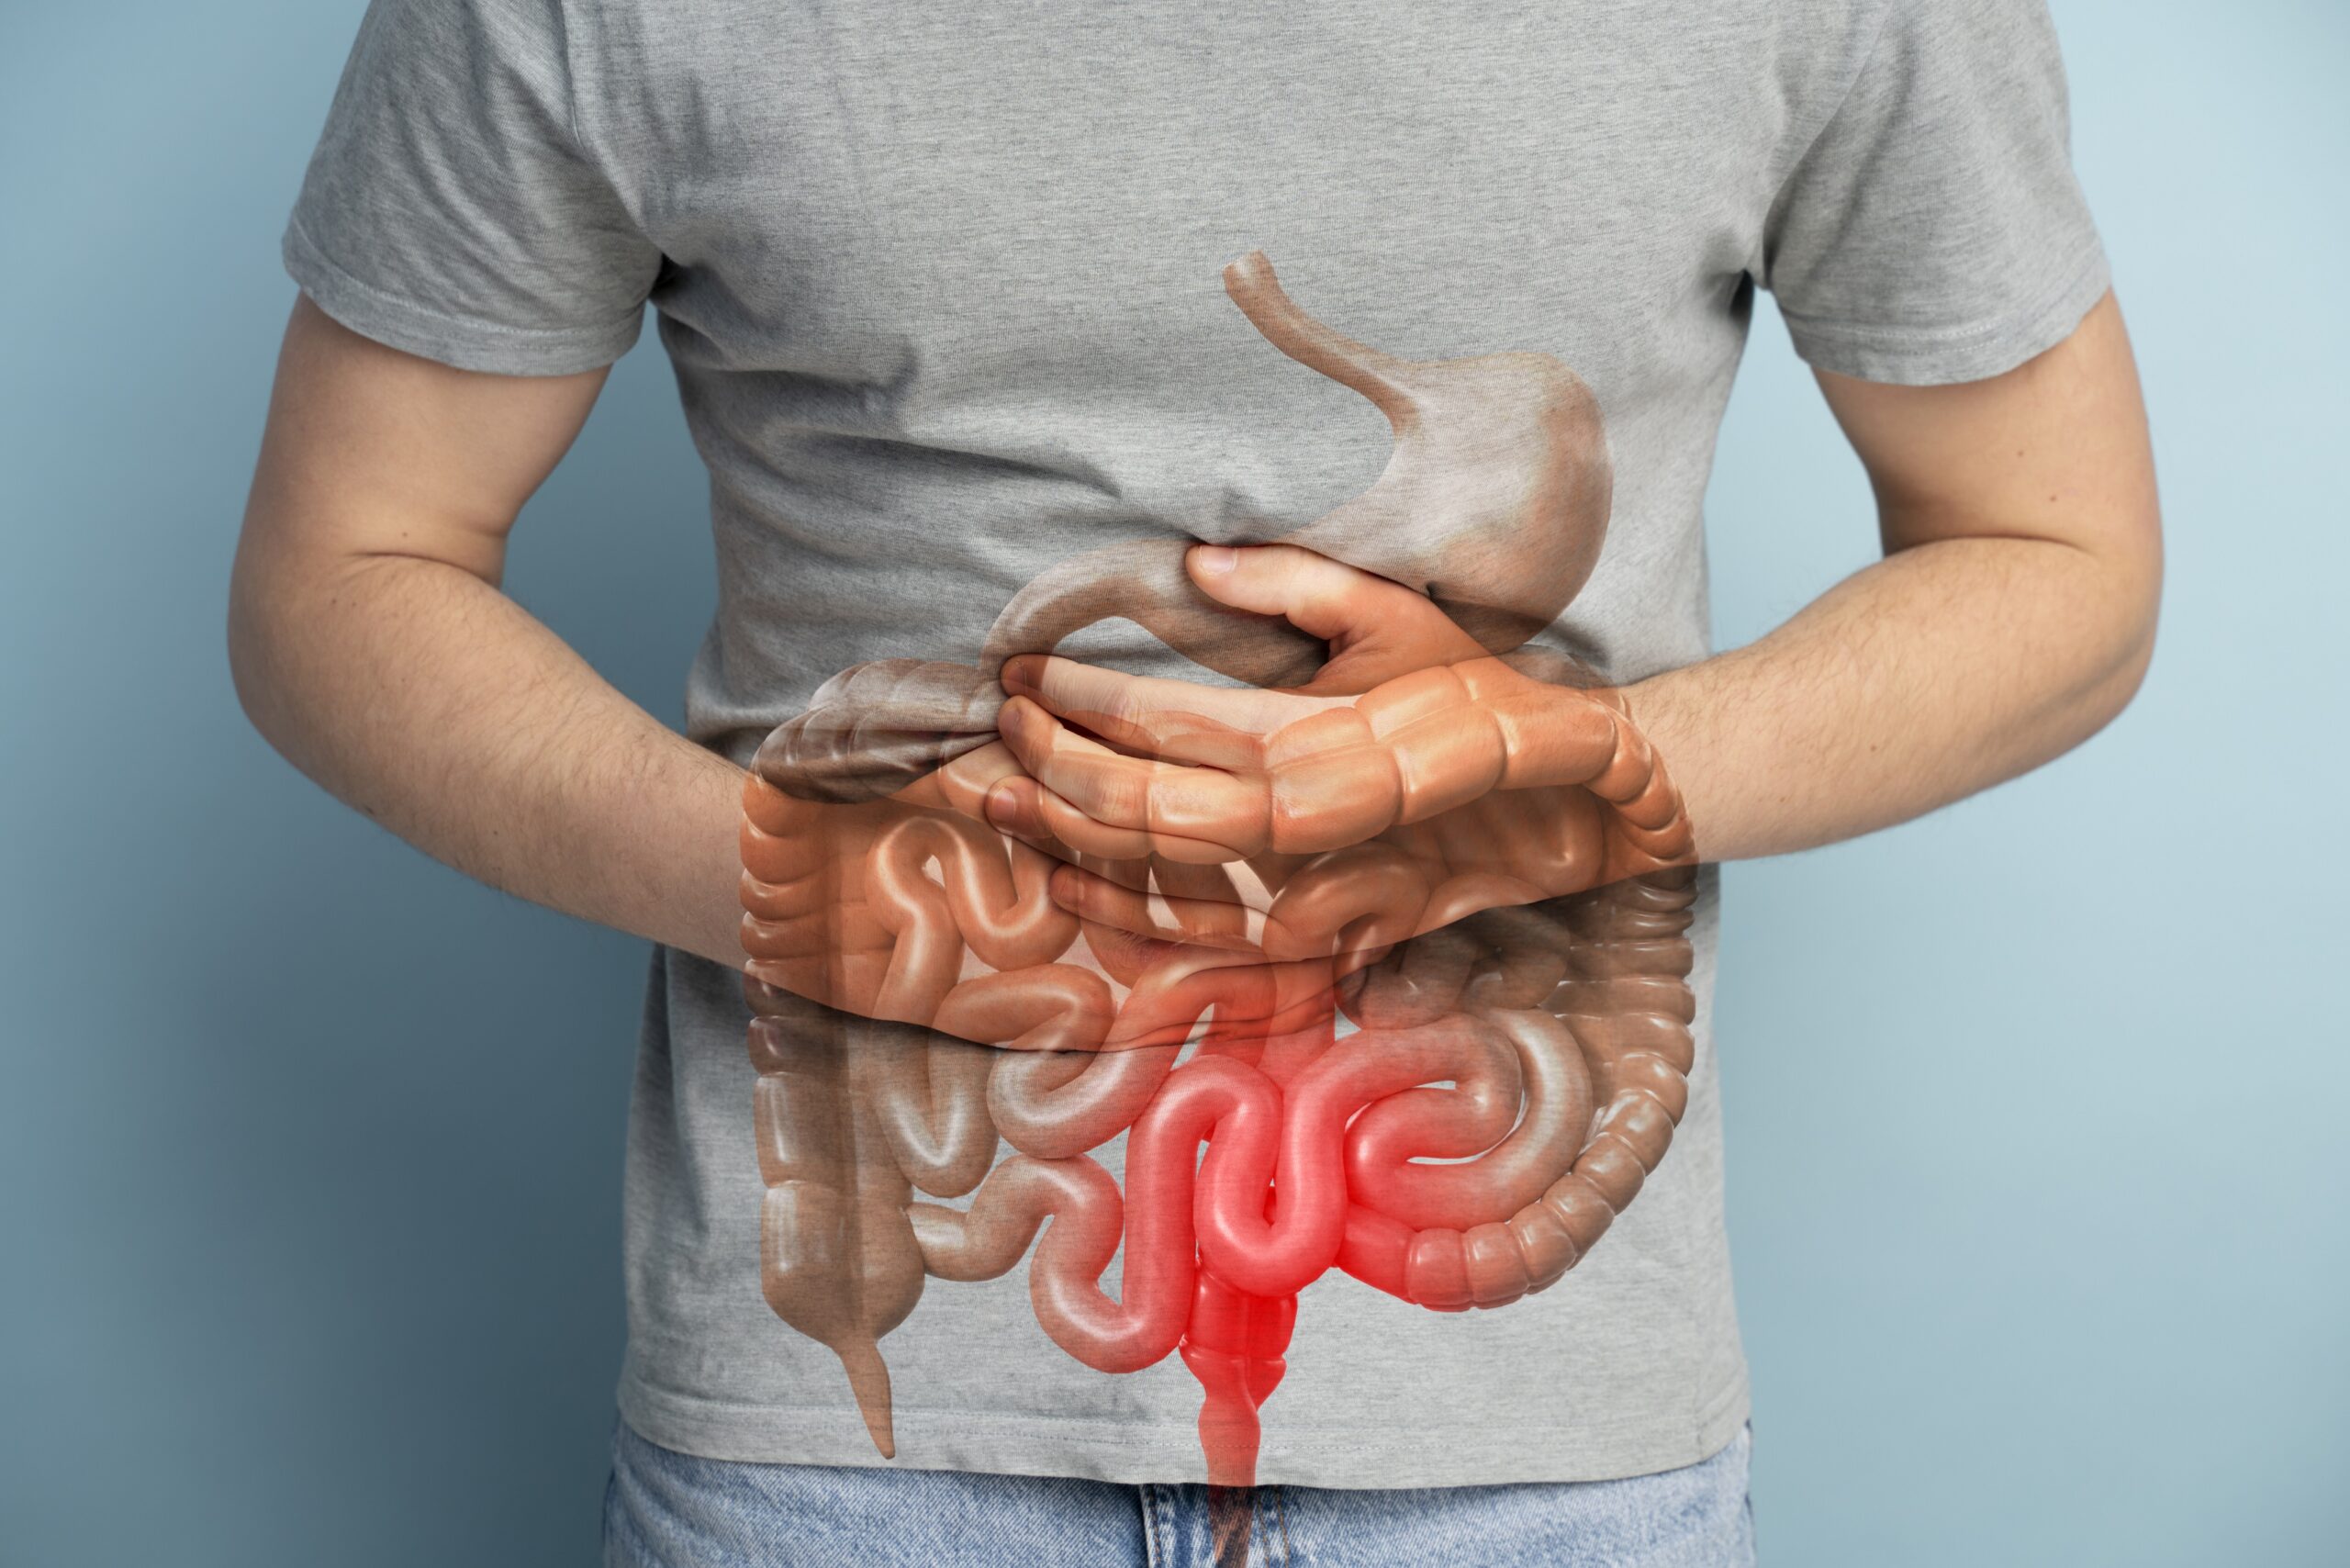 Cáncer de colon: síntomas y medidas que no se deben ignorar